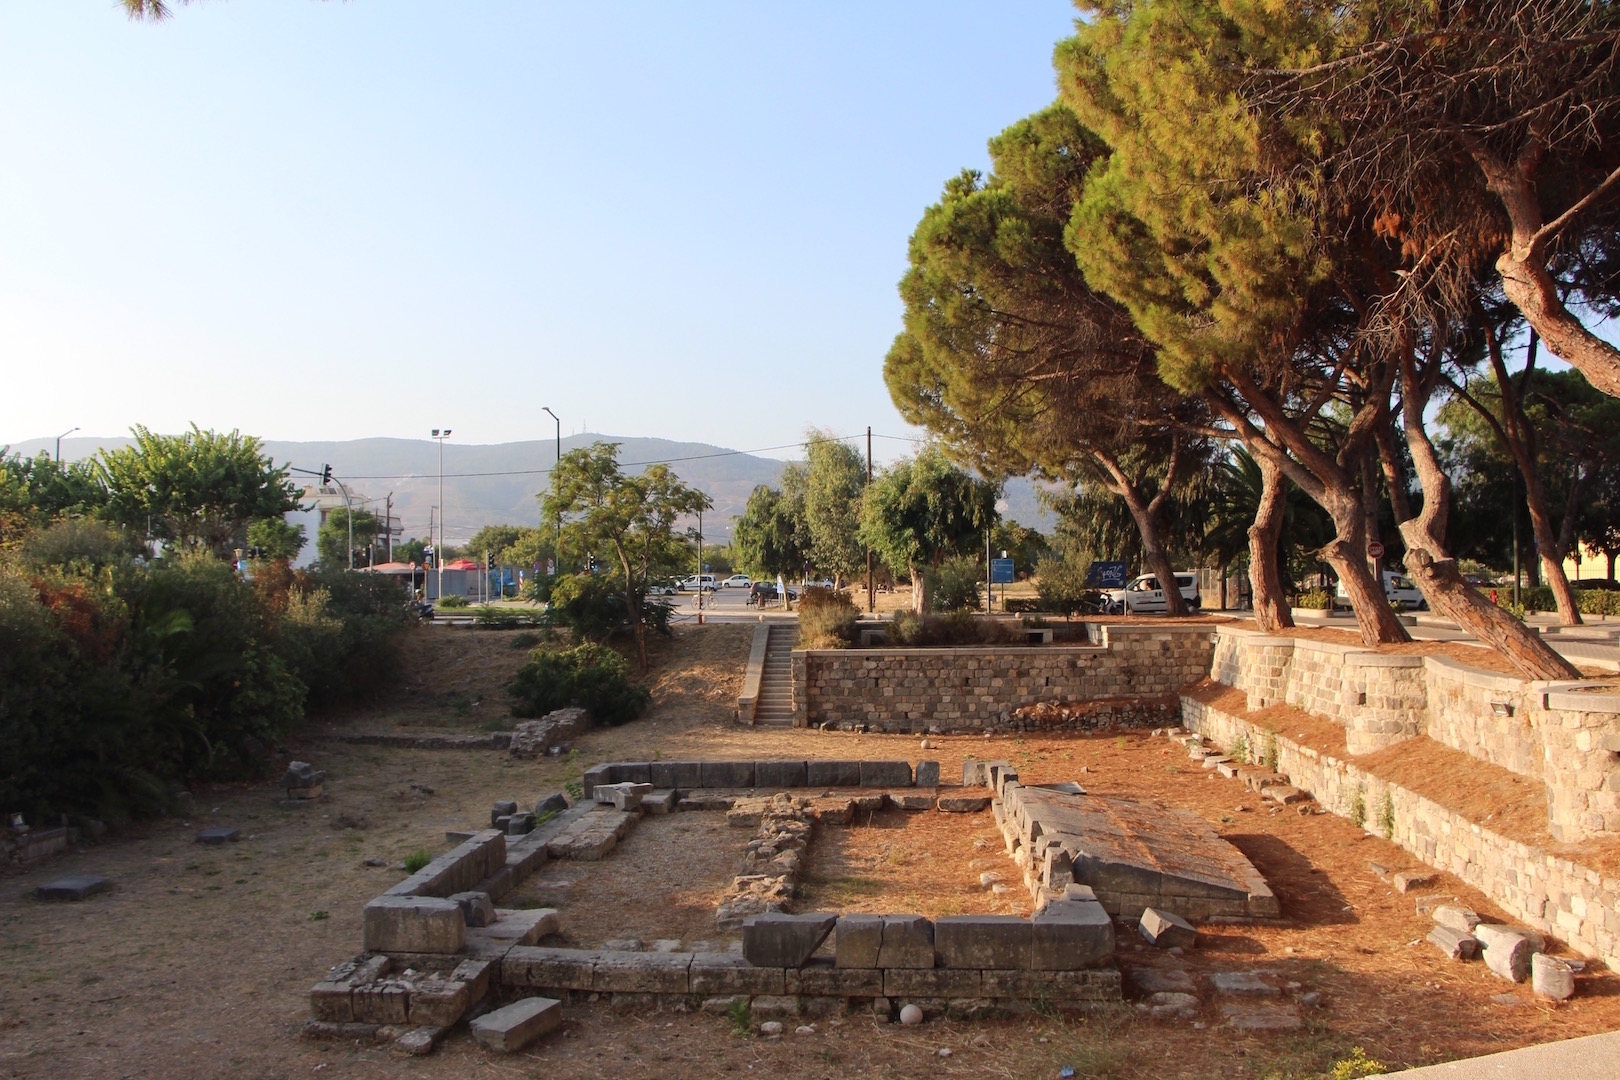 Dionysos' Altar